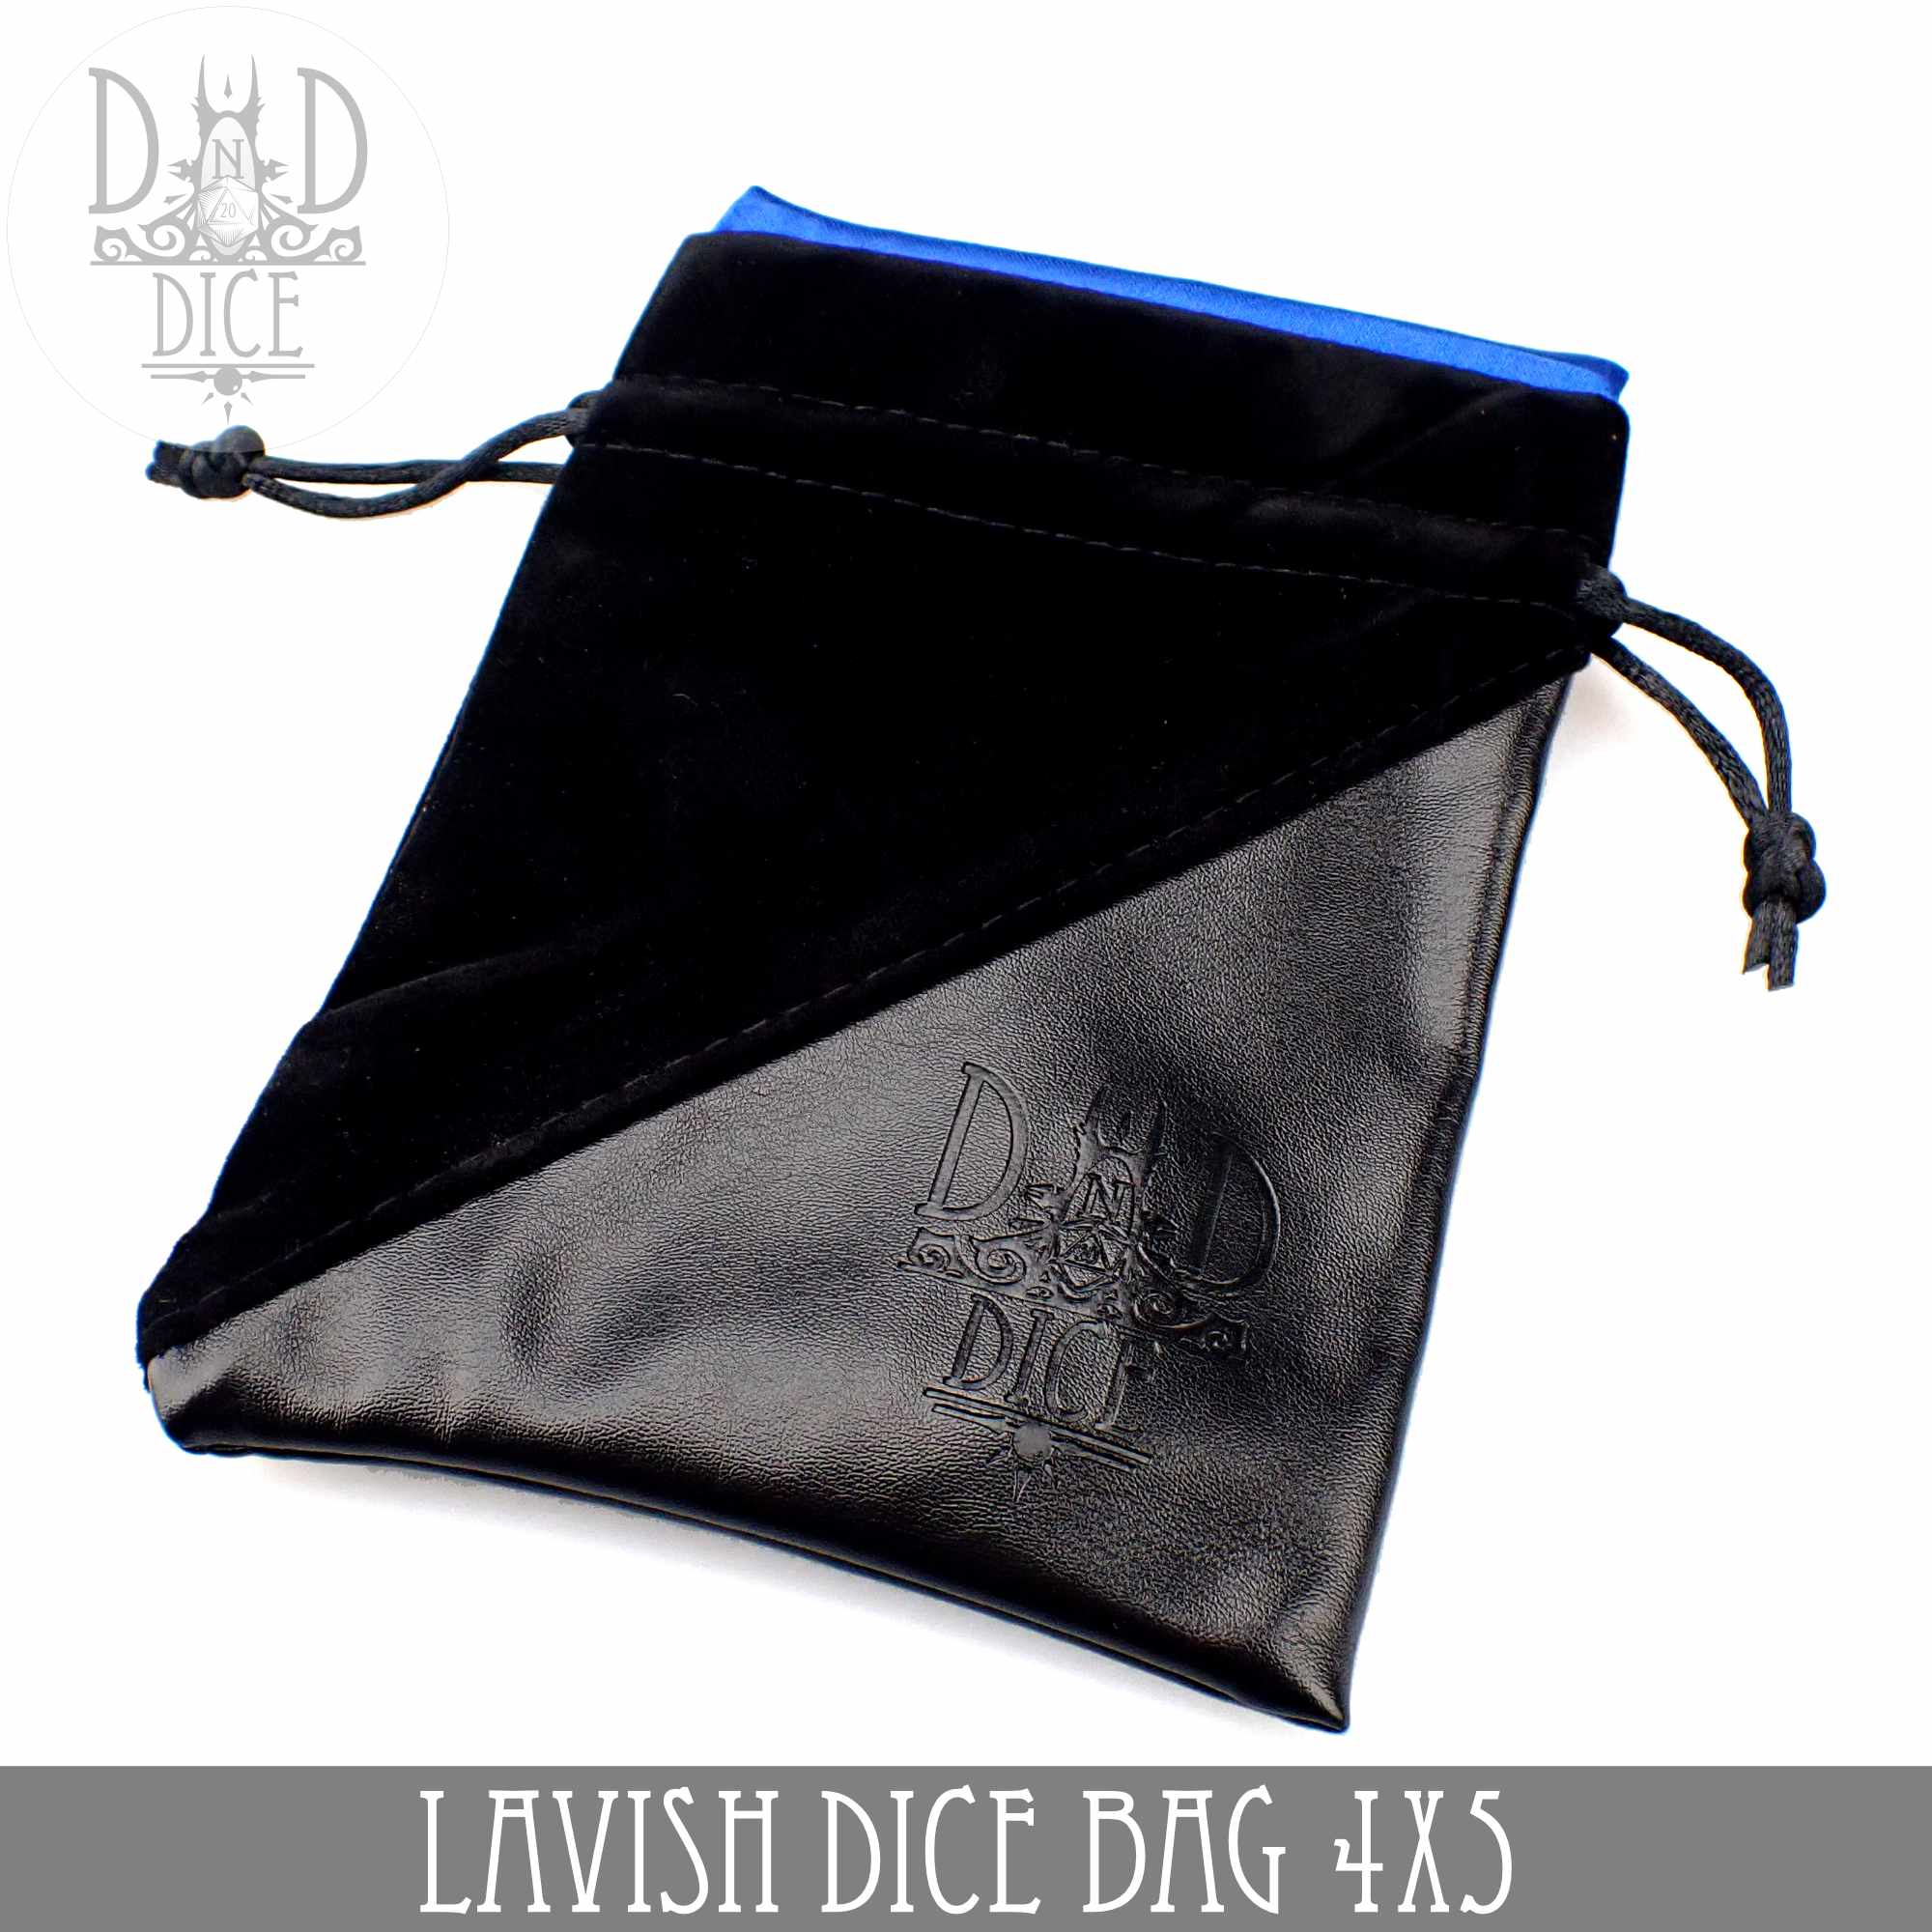 Premium Velvet Dice Bags, Black Velvet with Satin Lining